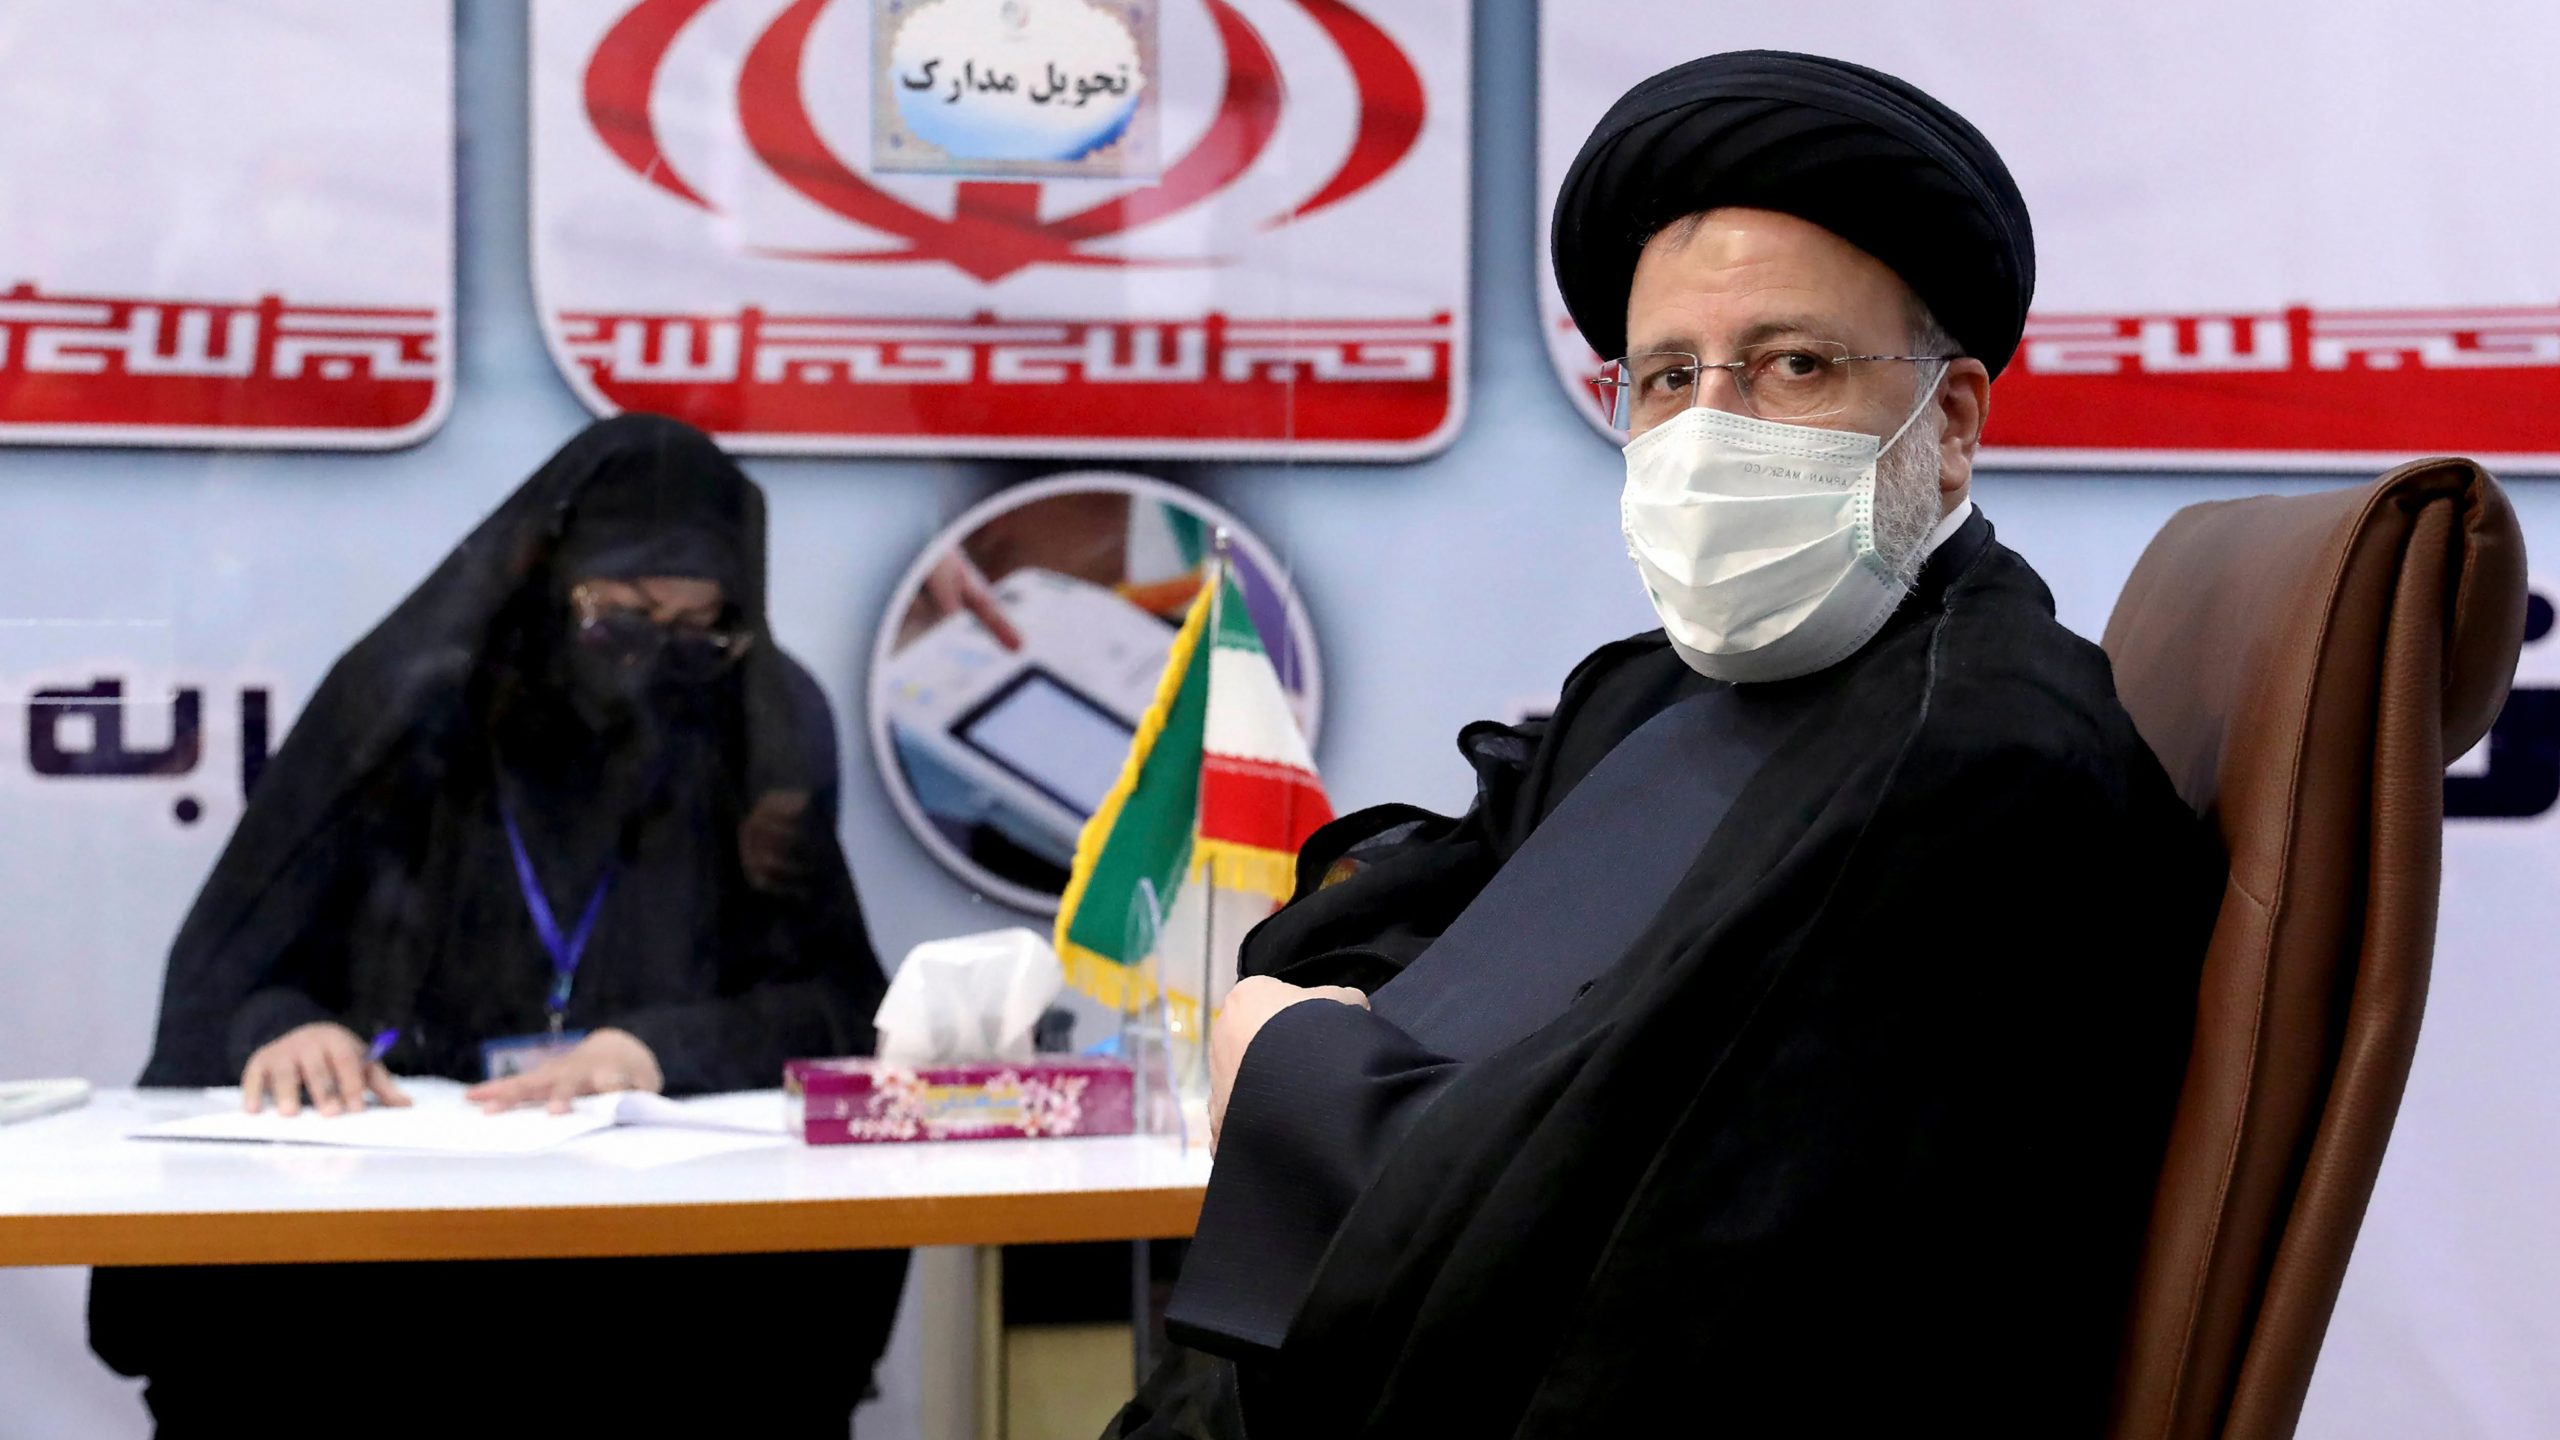 ‘Dawn of new era’: Iran’s conservative press hails Raisi win